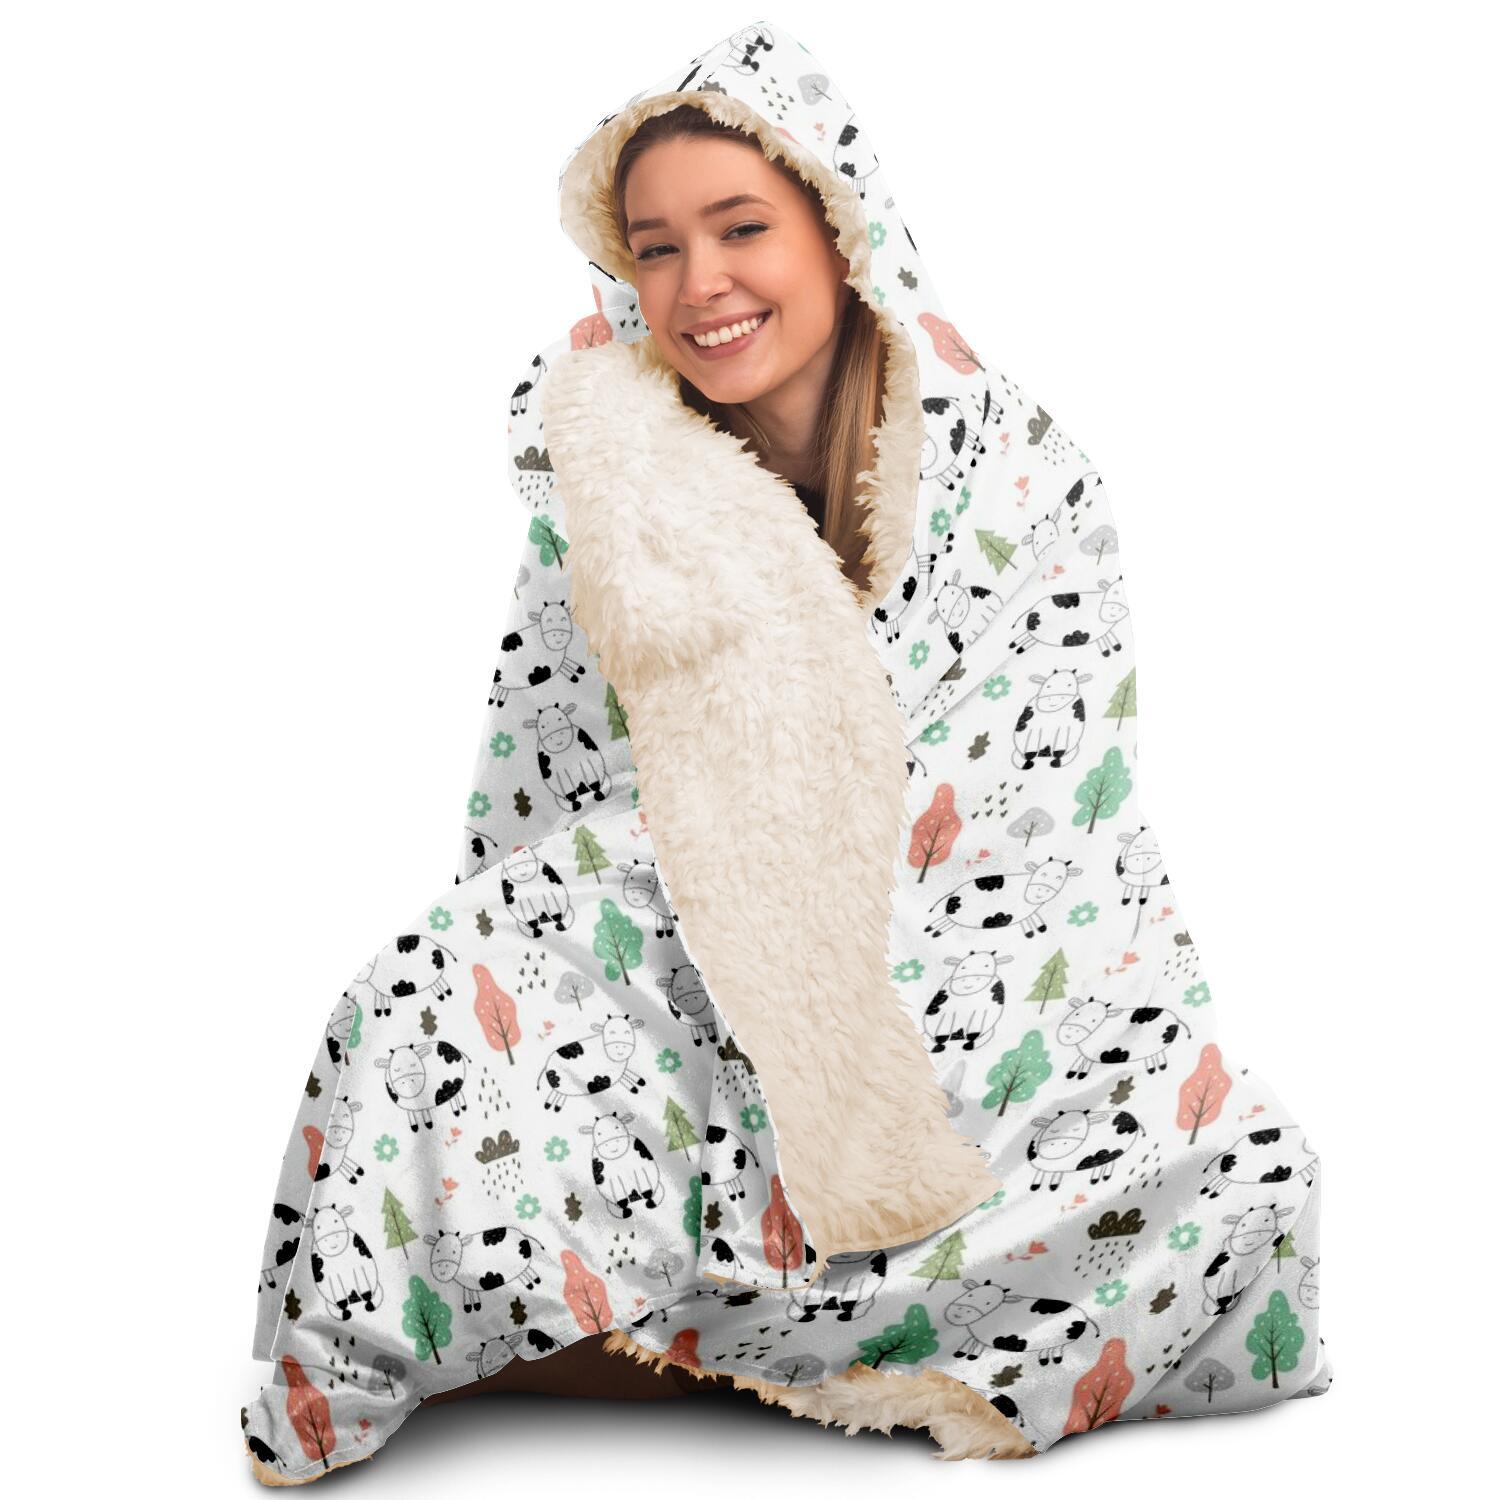 hooded blanket aop cute cow hooded blanket 6 - The Cow Print